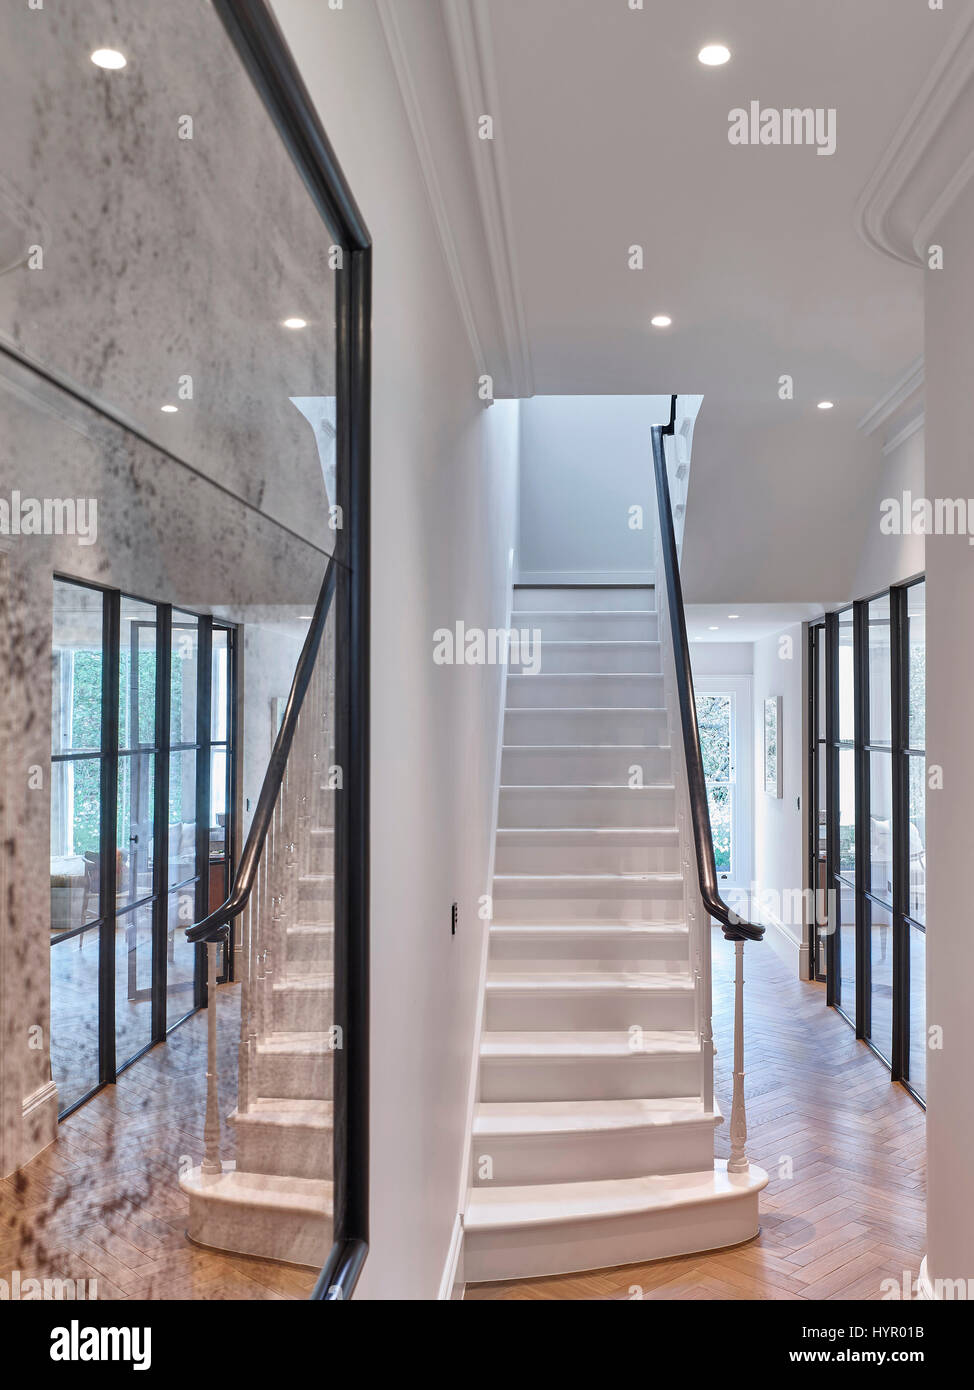 Treppe. Westlondon Familienhaus, London, Vereinigtes Königreich. Architekt: Steif + Trevillion Architekten, 2016. Stockfoto